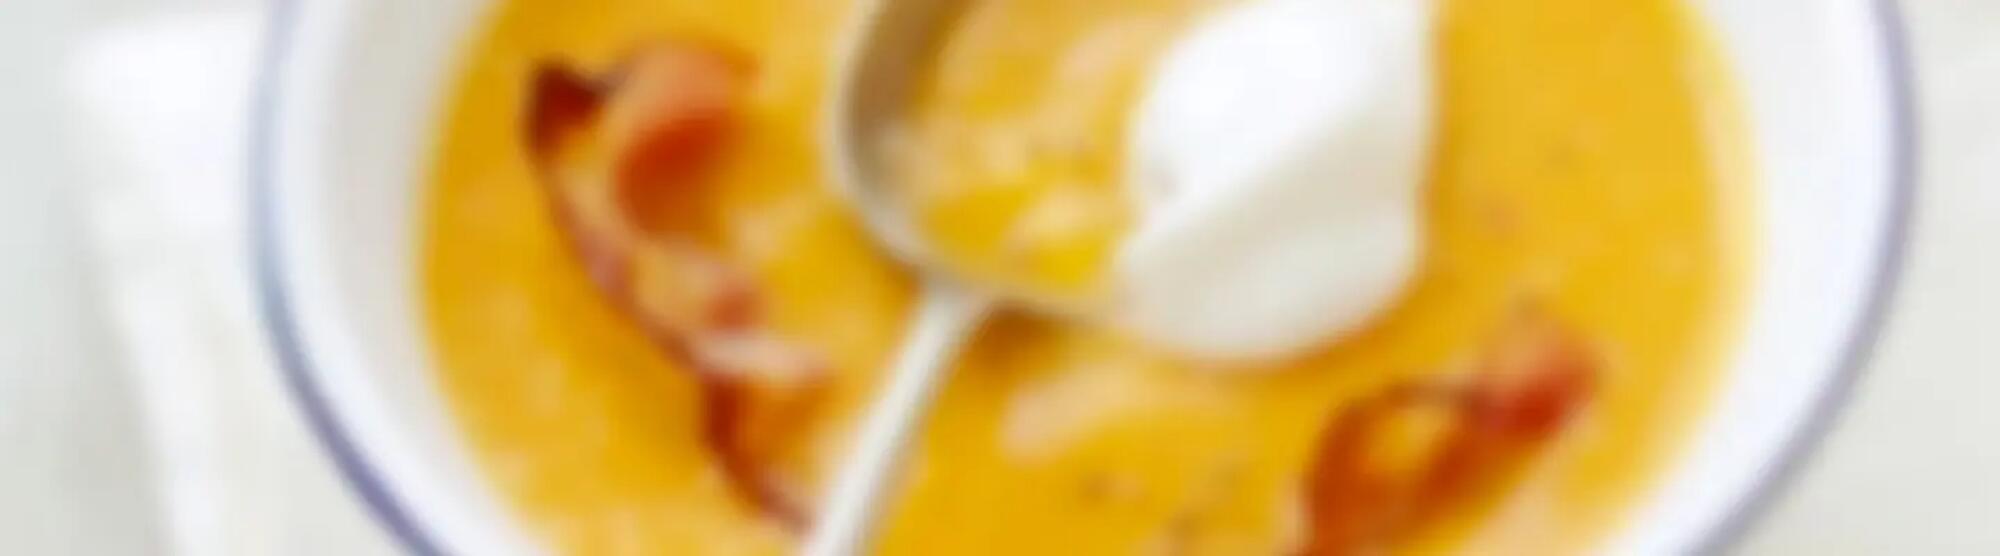 Recette : Velouté de potiron au fromage frais et chips de lard